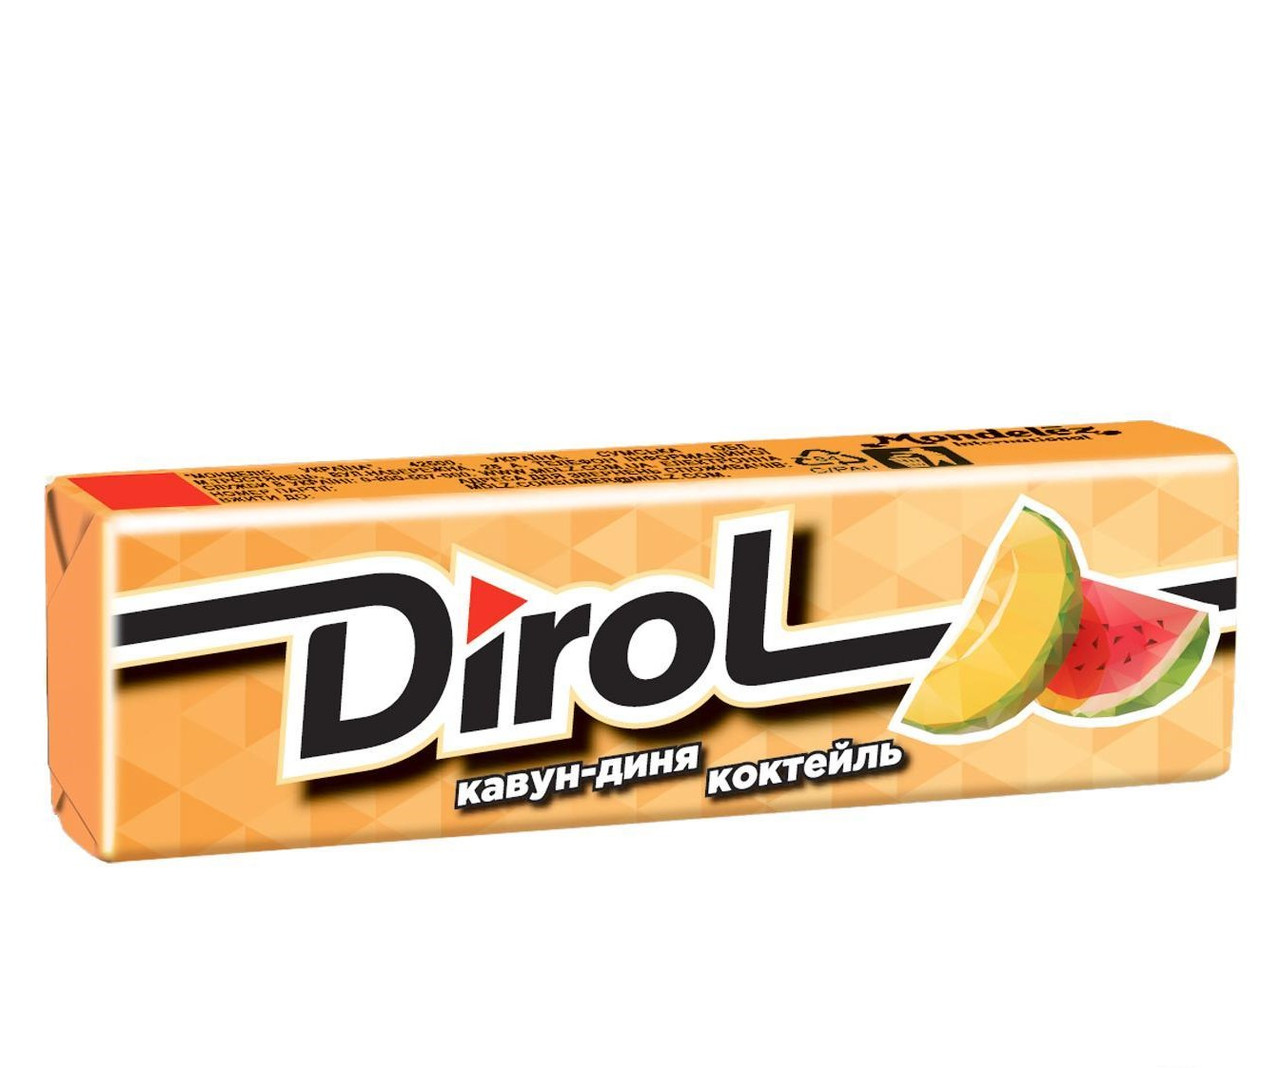 95-жовта гумка Дірол Dirol диня кавун